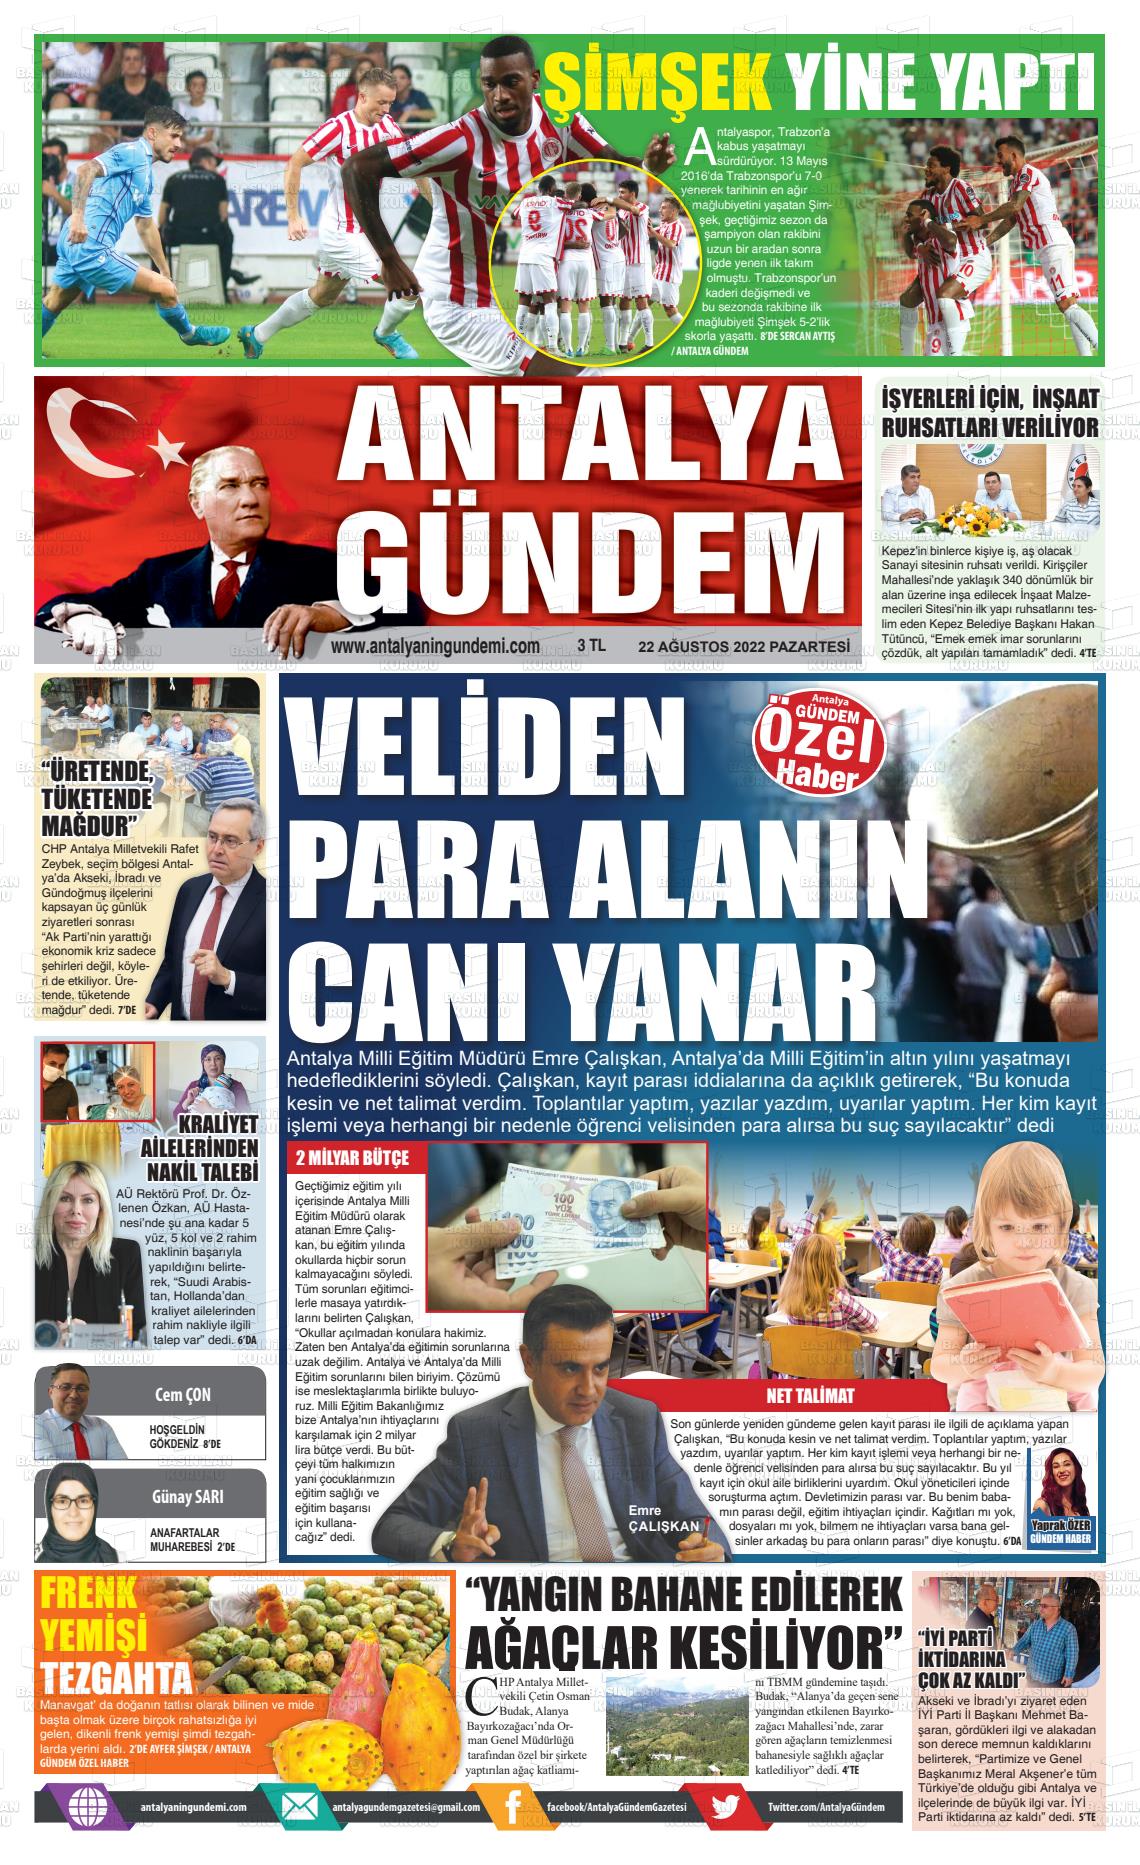 22 Ağustos 2022 Antalya'nın Gündemi Gazete Manşeti